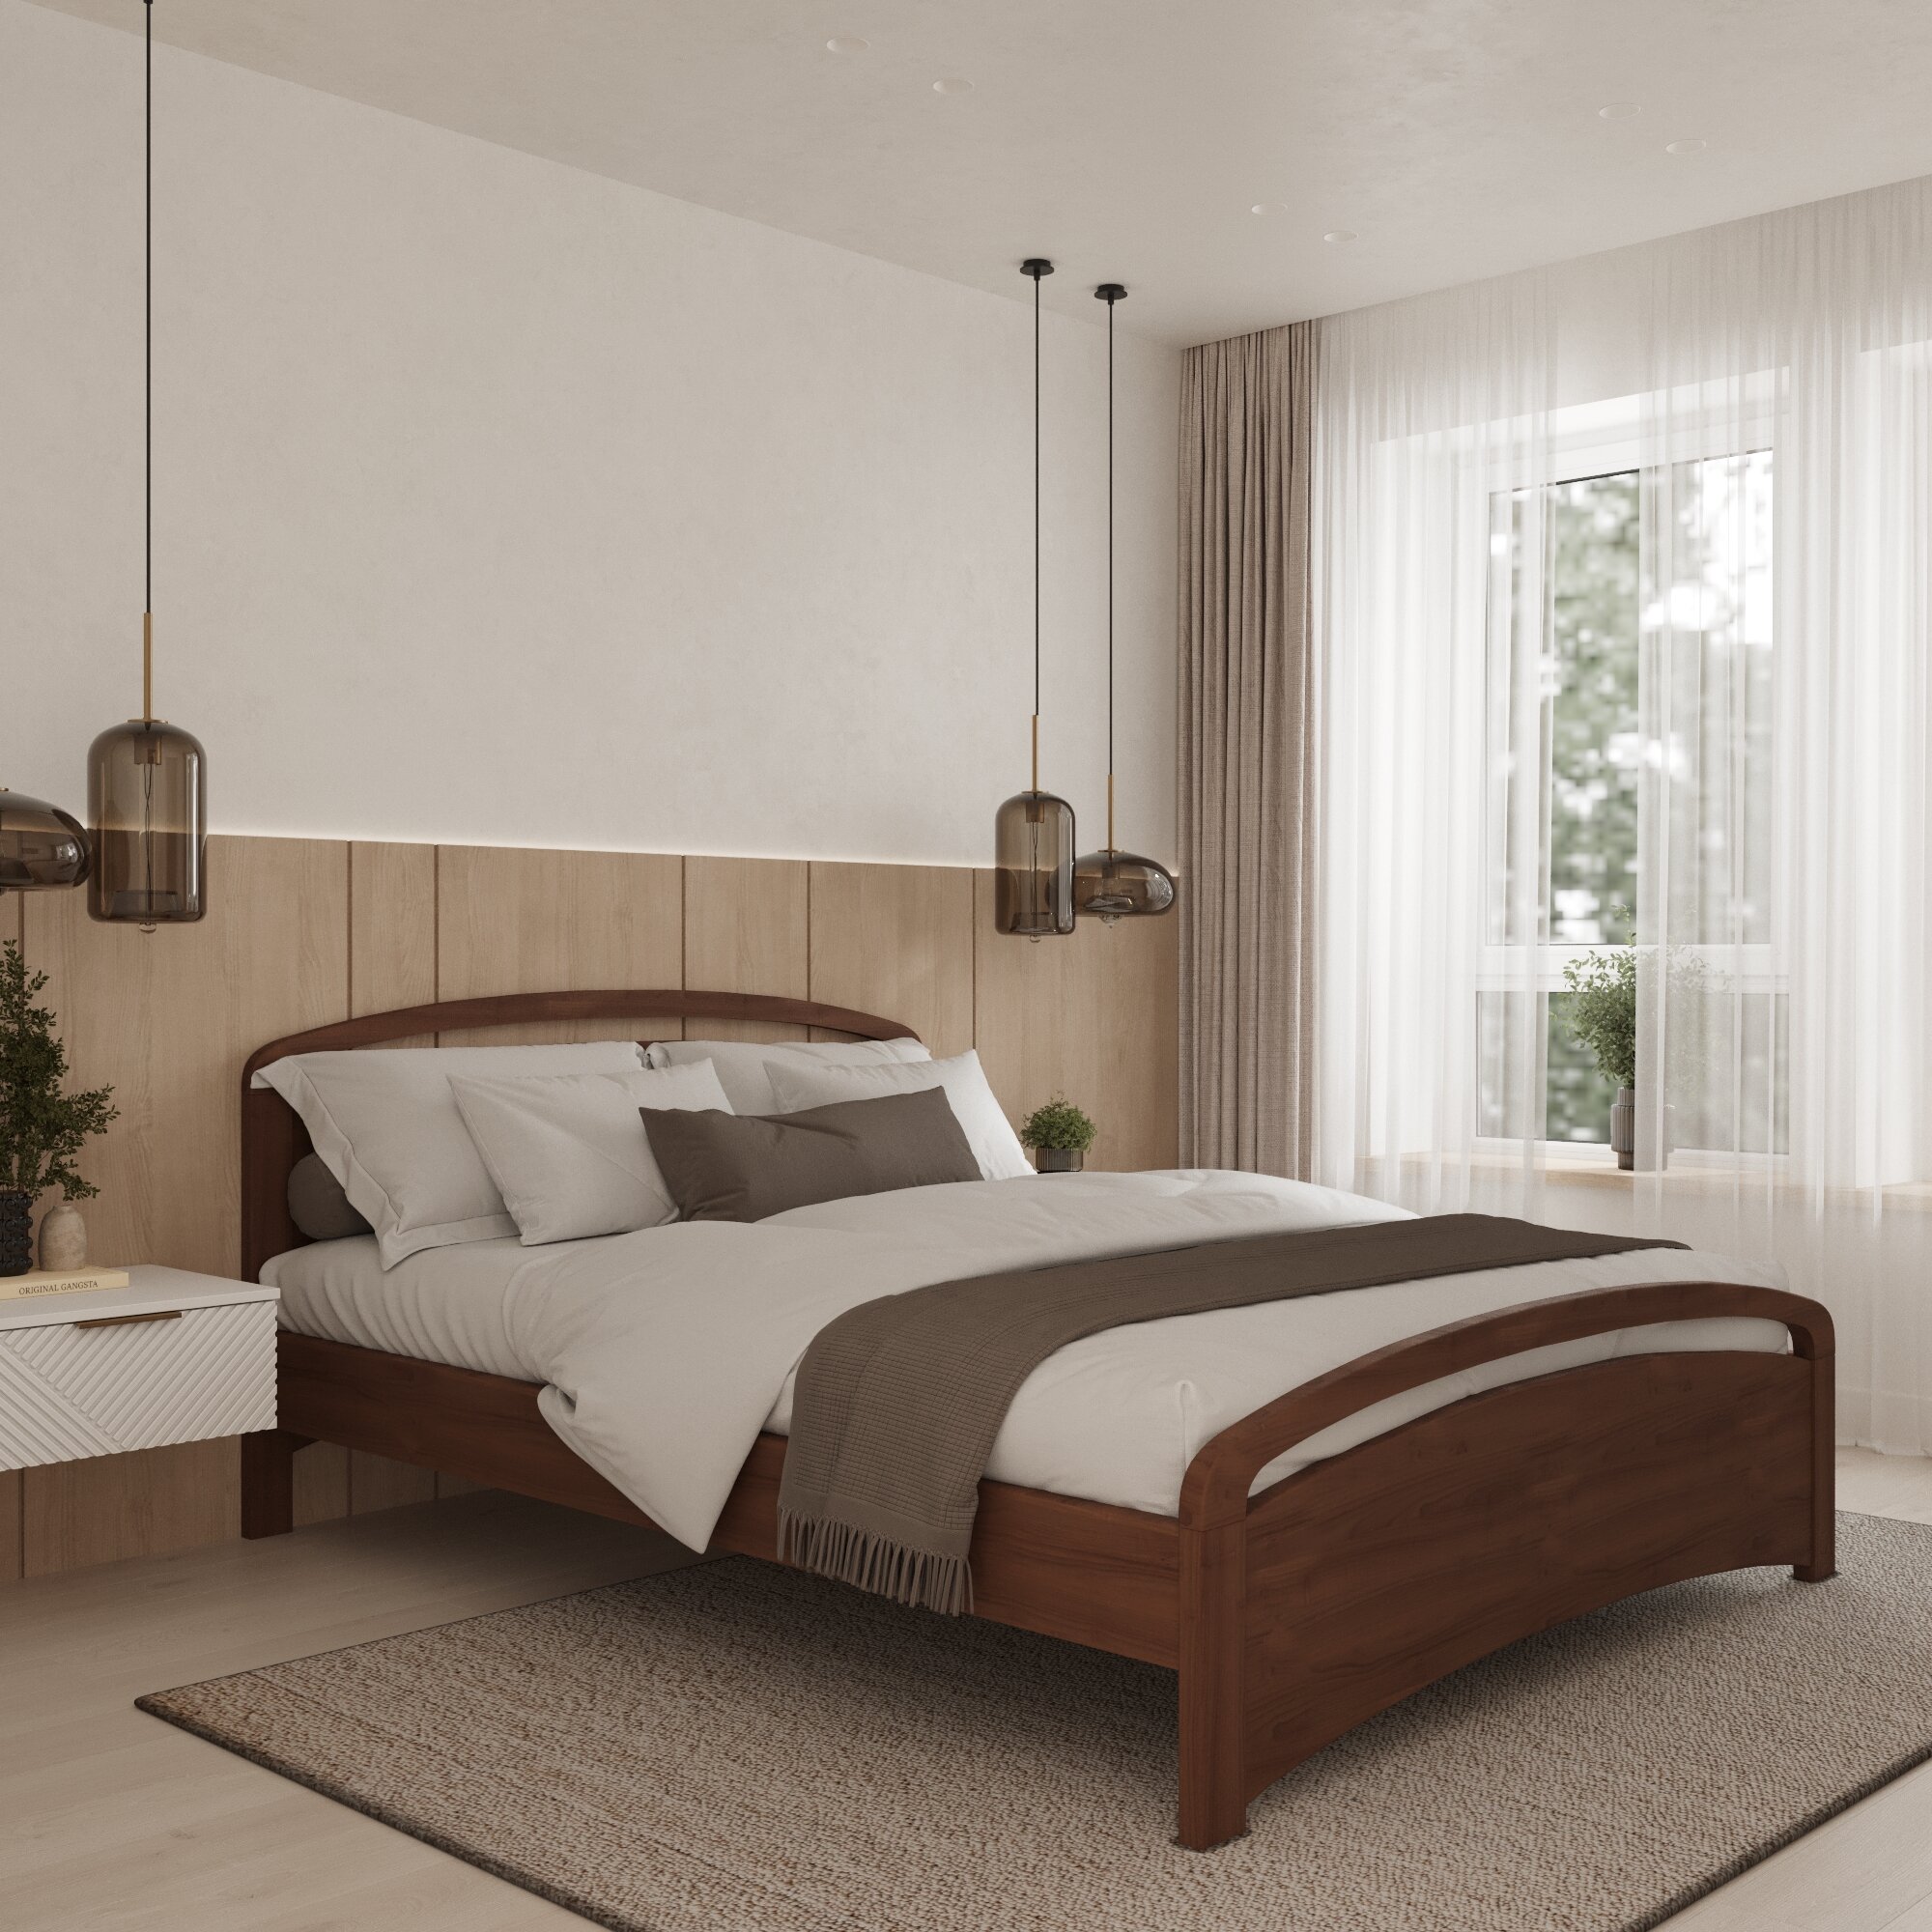 Двуспальная кровать Кровать деревянная Бали Люкс 180*200, 180х200 см, ММК-Древ